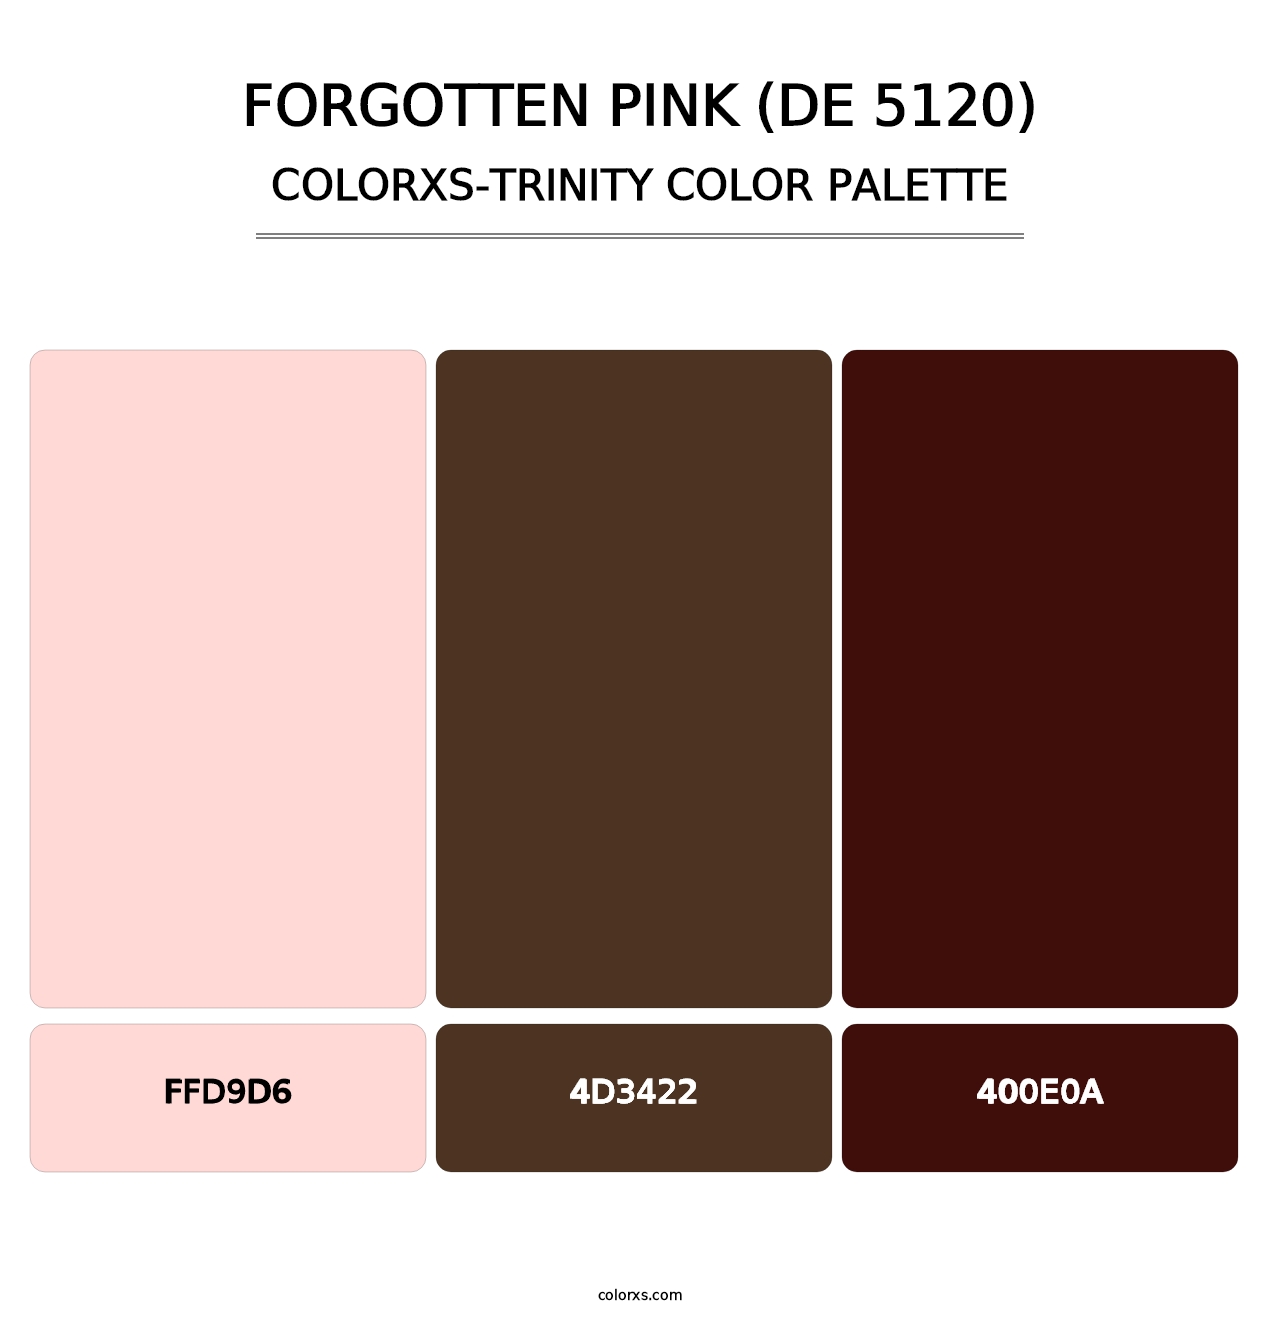 Forgotten Pink (DE 5120) - Colorxs Trinity Palette